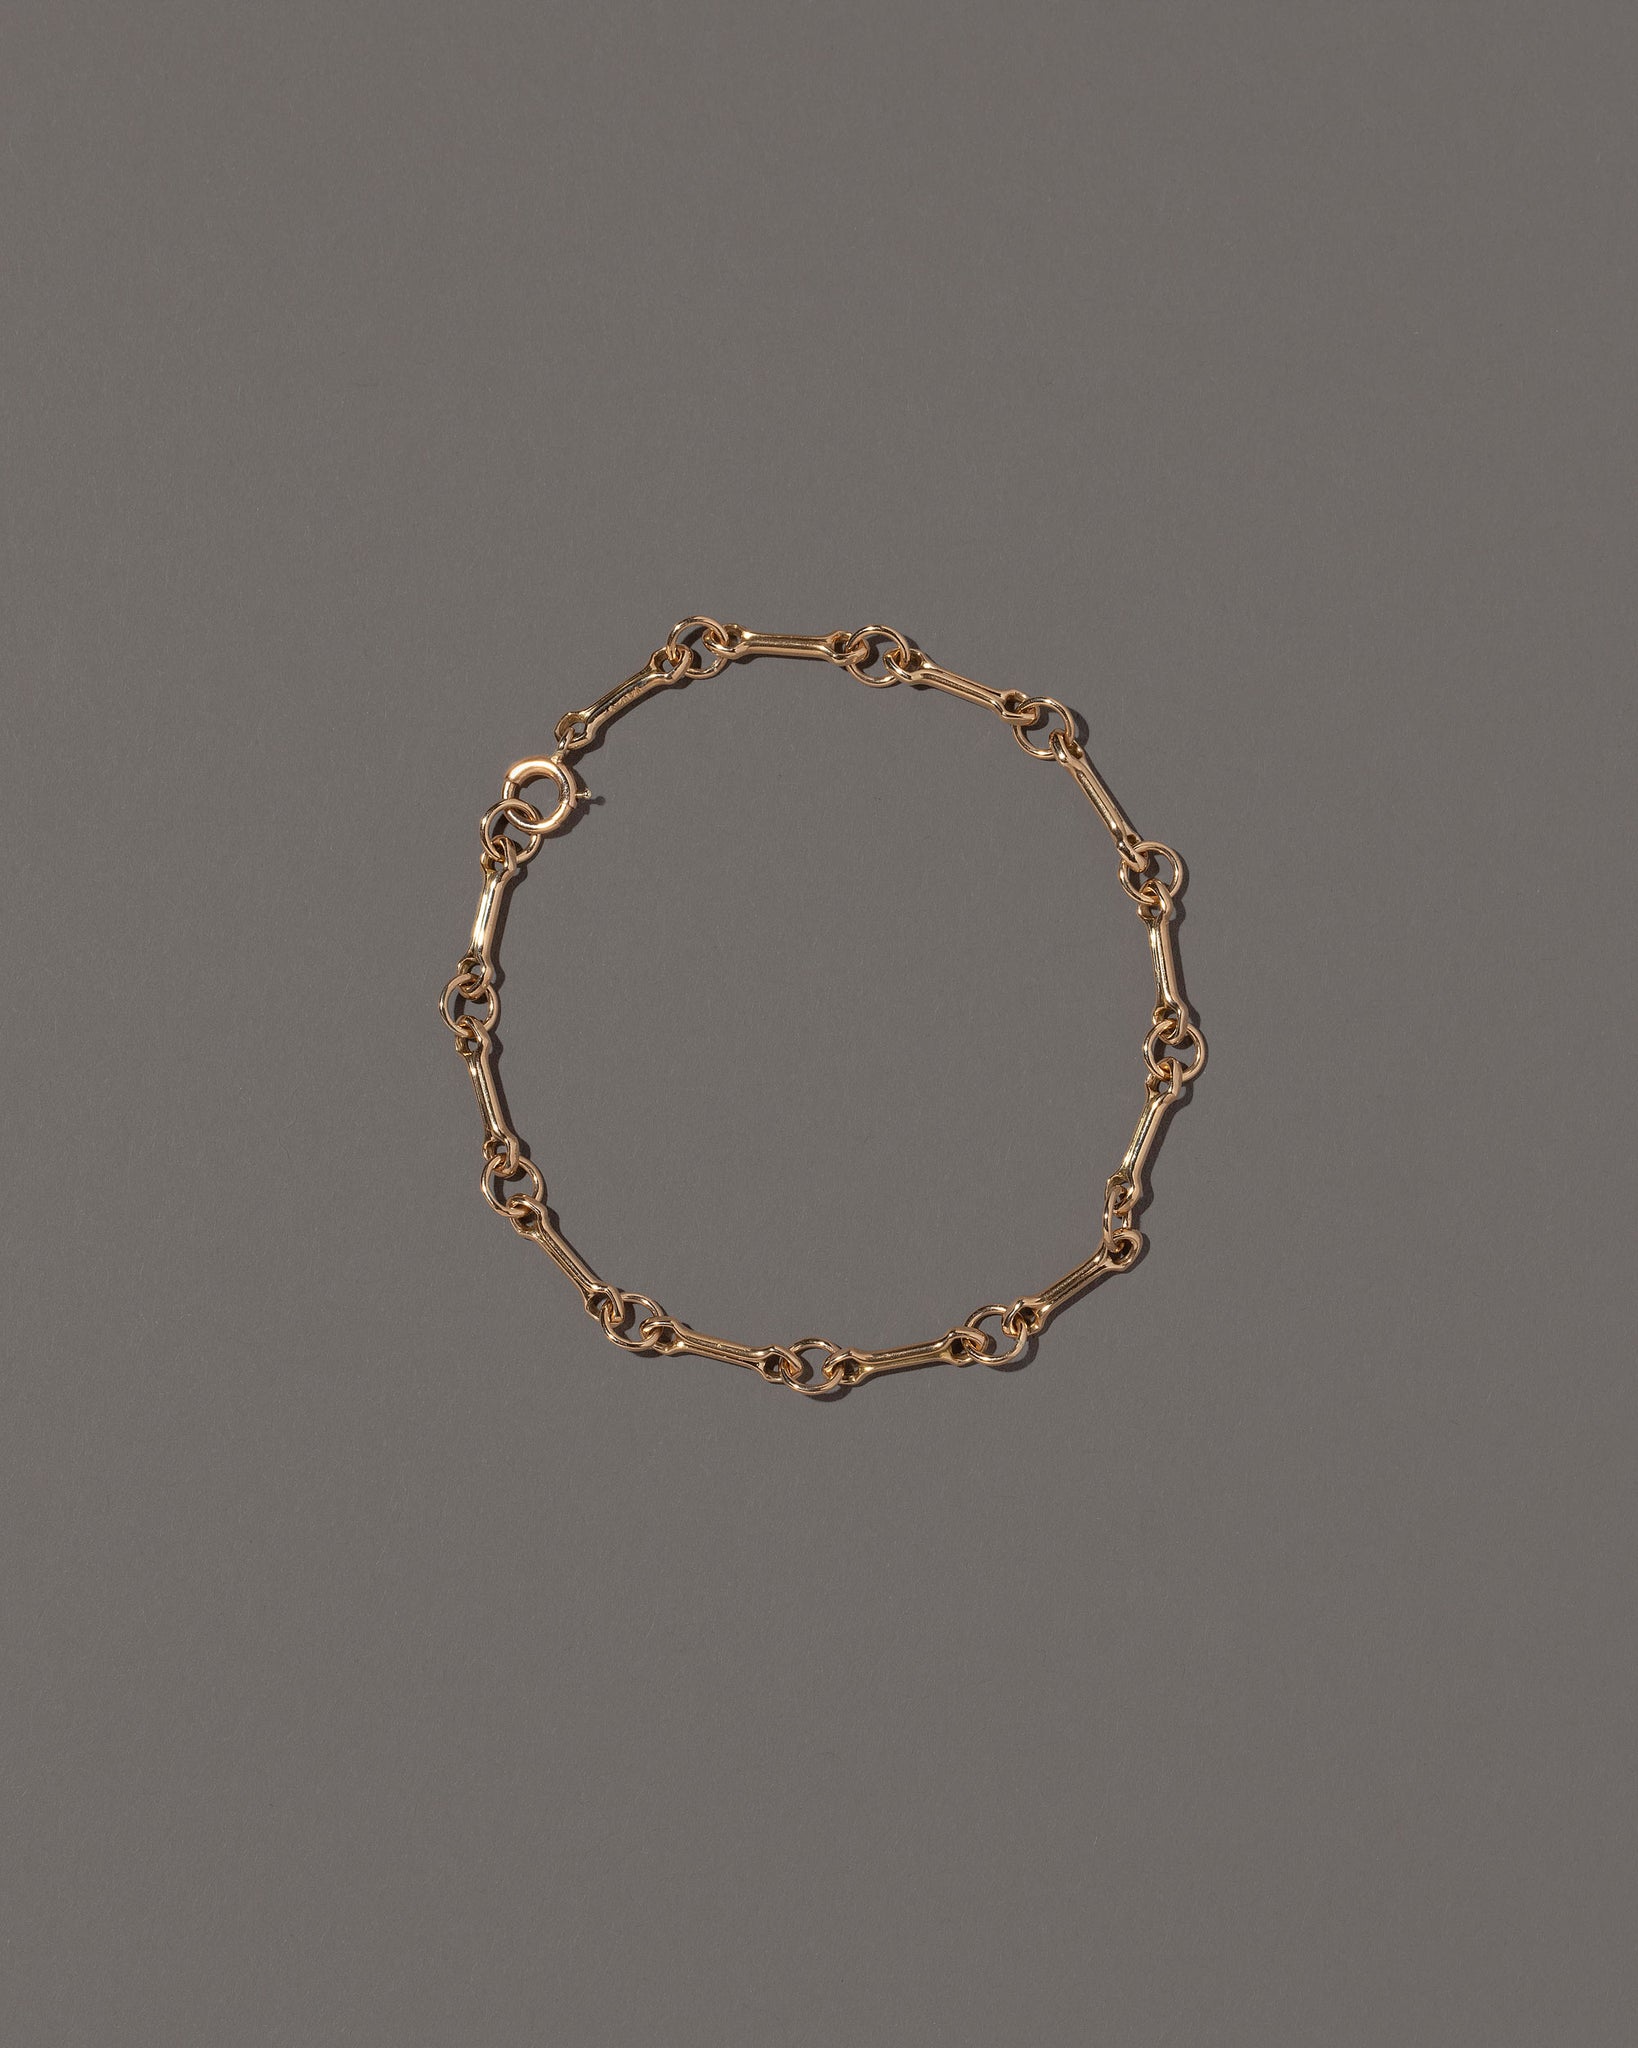 Bar Link Charm Chain Bracelet on light color background.